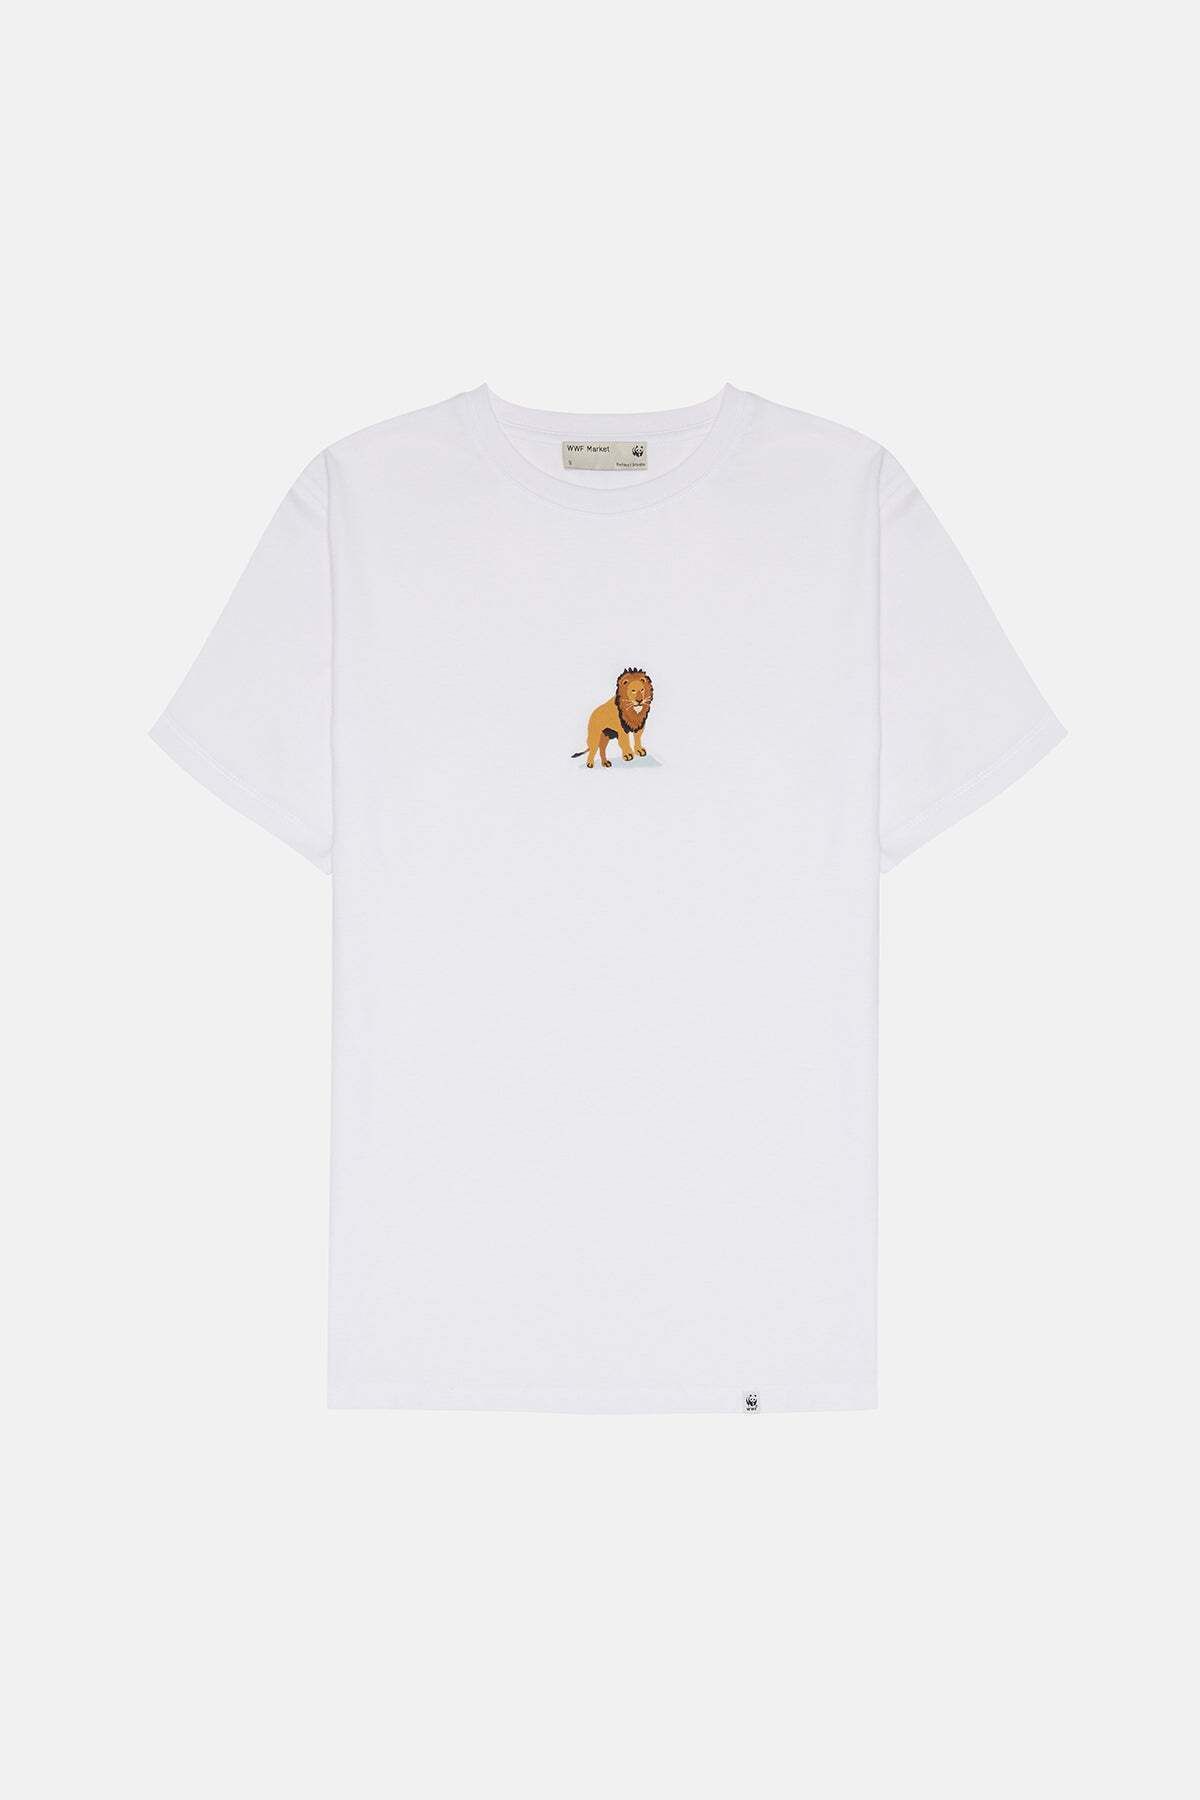 WWF Market Aslan Soft T-Shirt - Beyaz